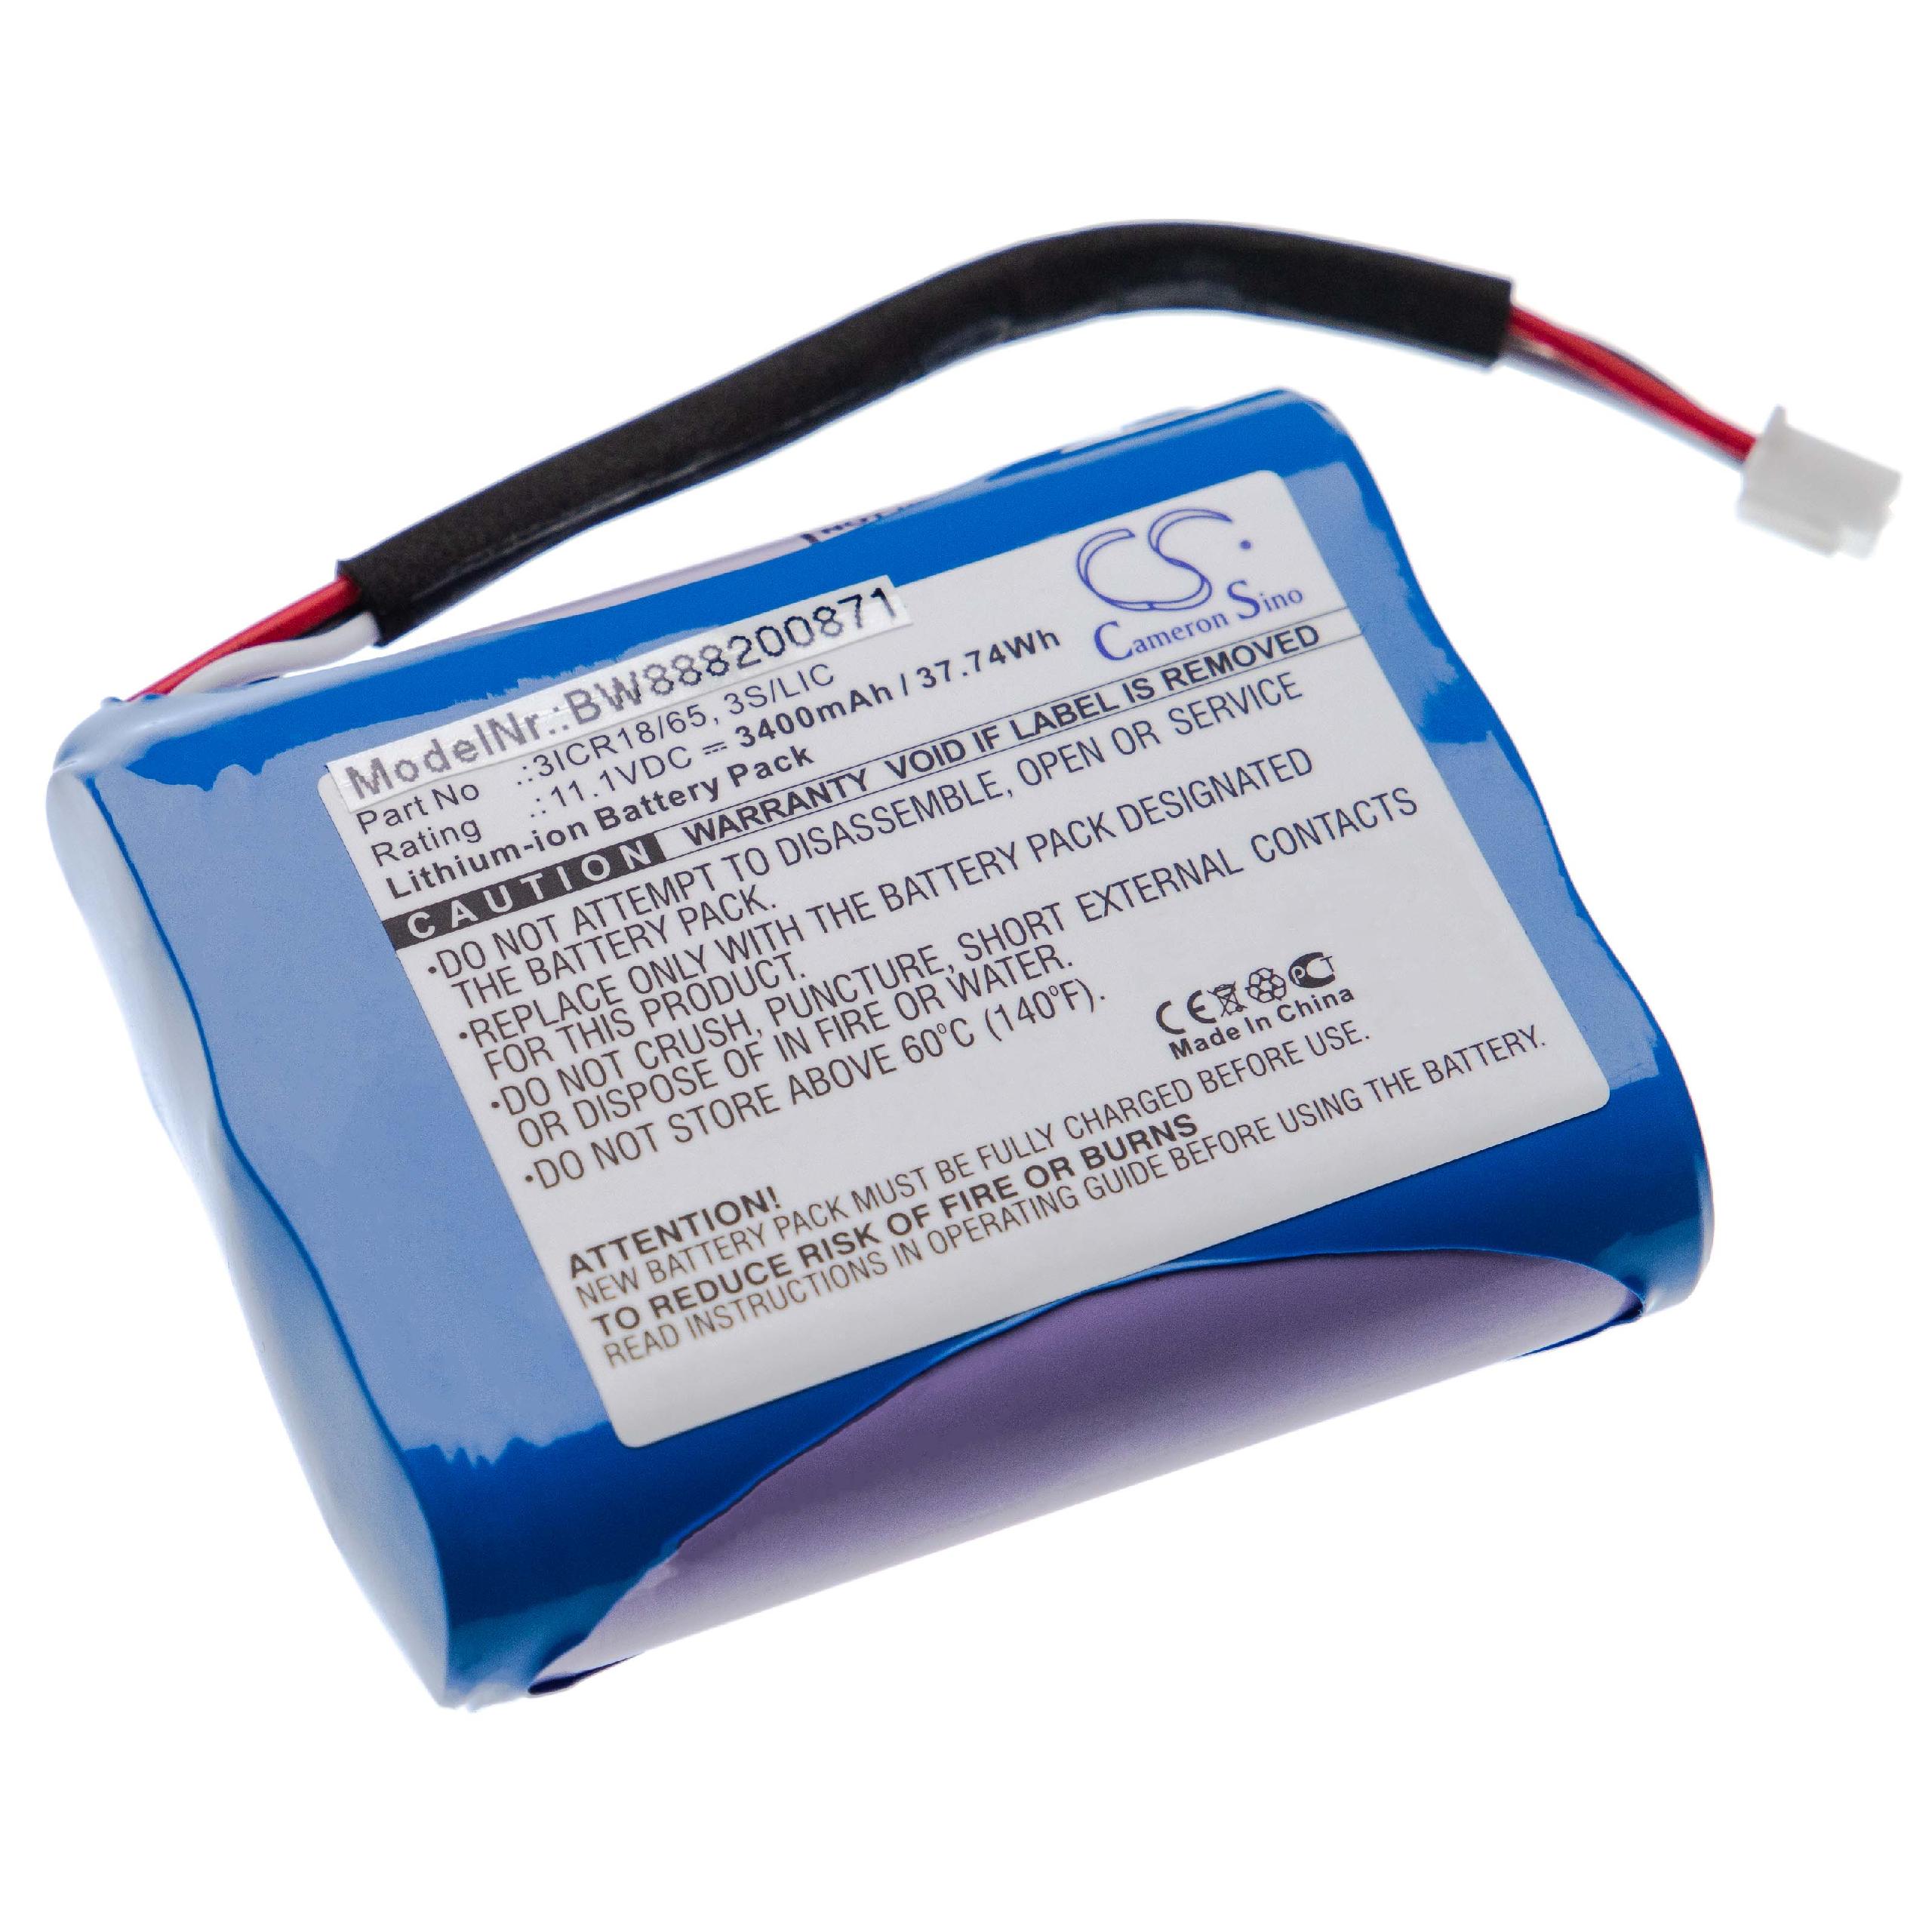 Batería reemplaza Bang & Olufsen 3ICR18/65, 3S/LIC para altavoces Bang & Olufsen - 3400 mAh 11,1 V Li-Ion